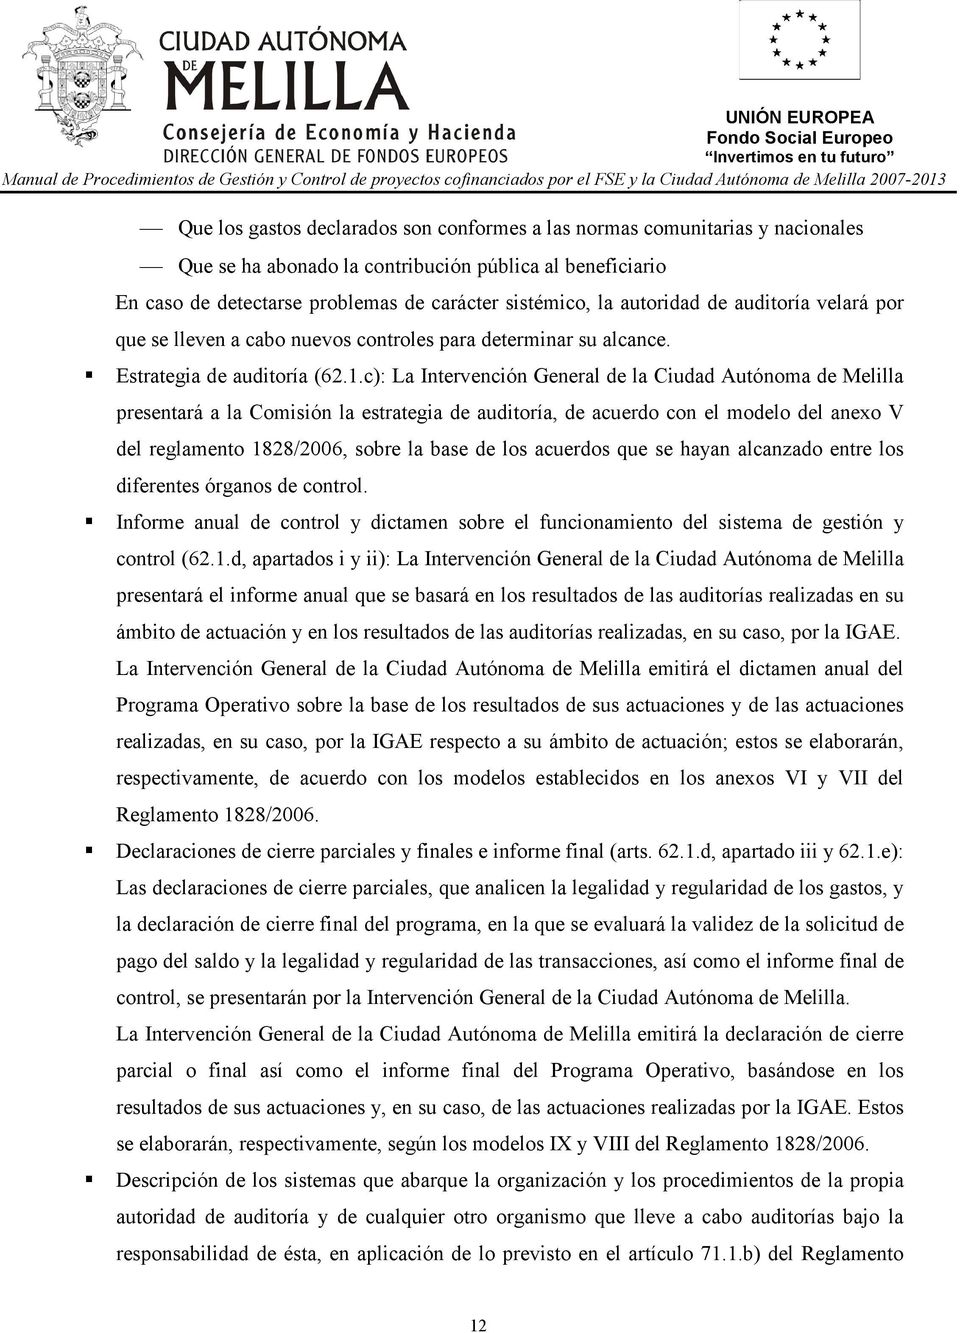 c): La Intervención General de la Ciudad Autónoma de Melilla presentará a la Comisión la estrategia de auditoría, de acuerdo con el modelo del anexo V del reglamento 1828/2006, sobre la base de los